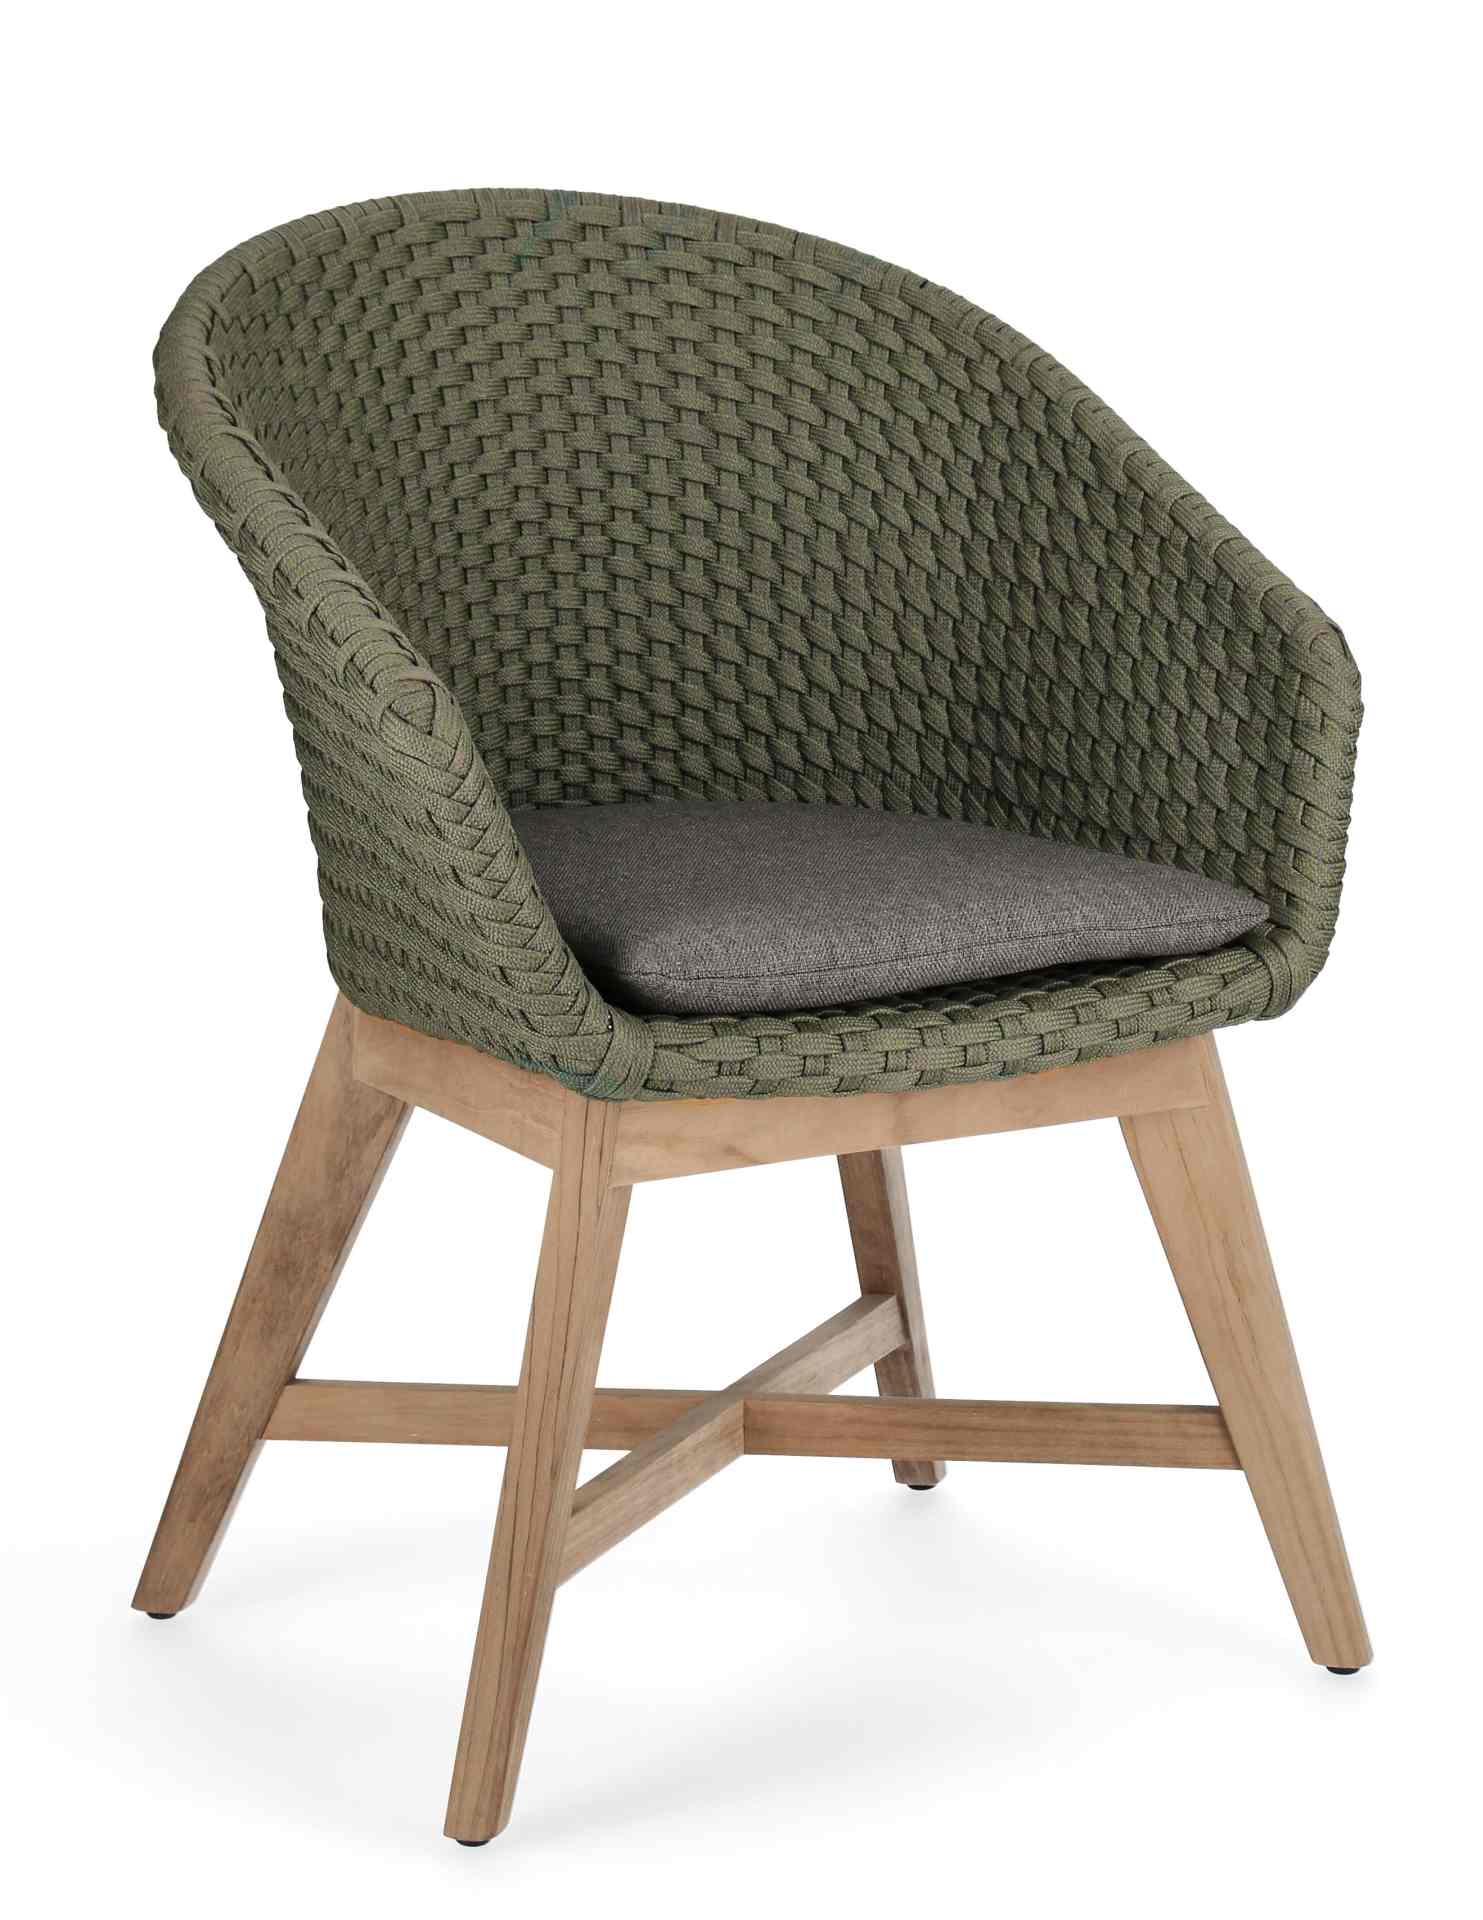 Der Gartenstuhl Coachella überzeugt mit seinem modernen Design. Gefertigt wurde er aus Olefin-Stoff, welcher einen grünen Farbton besitzt. Das Gestell ist aus Teakholz und hat eine natürliche Farbe. Der Stuhl verfügt über eine Sitzhöhe von 46 cm und ist f